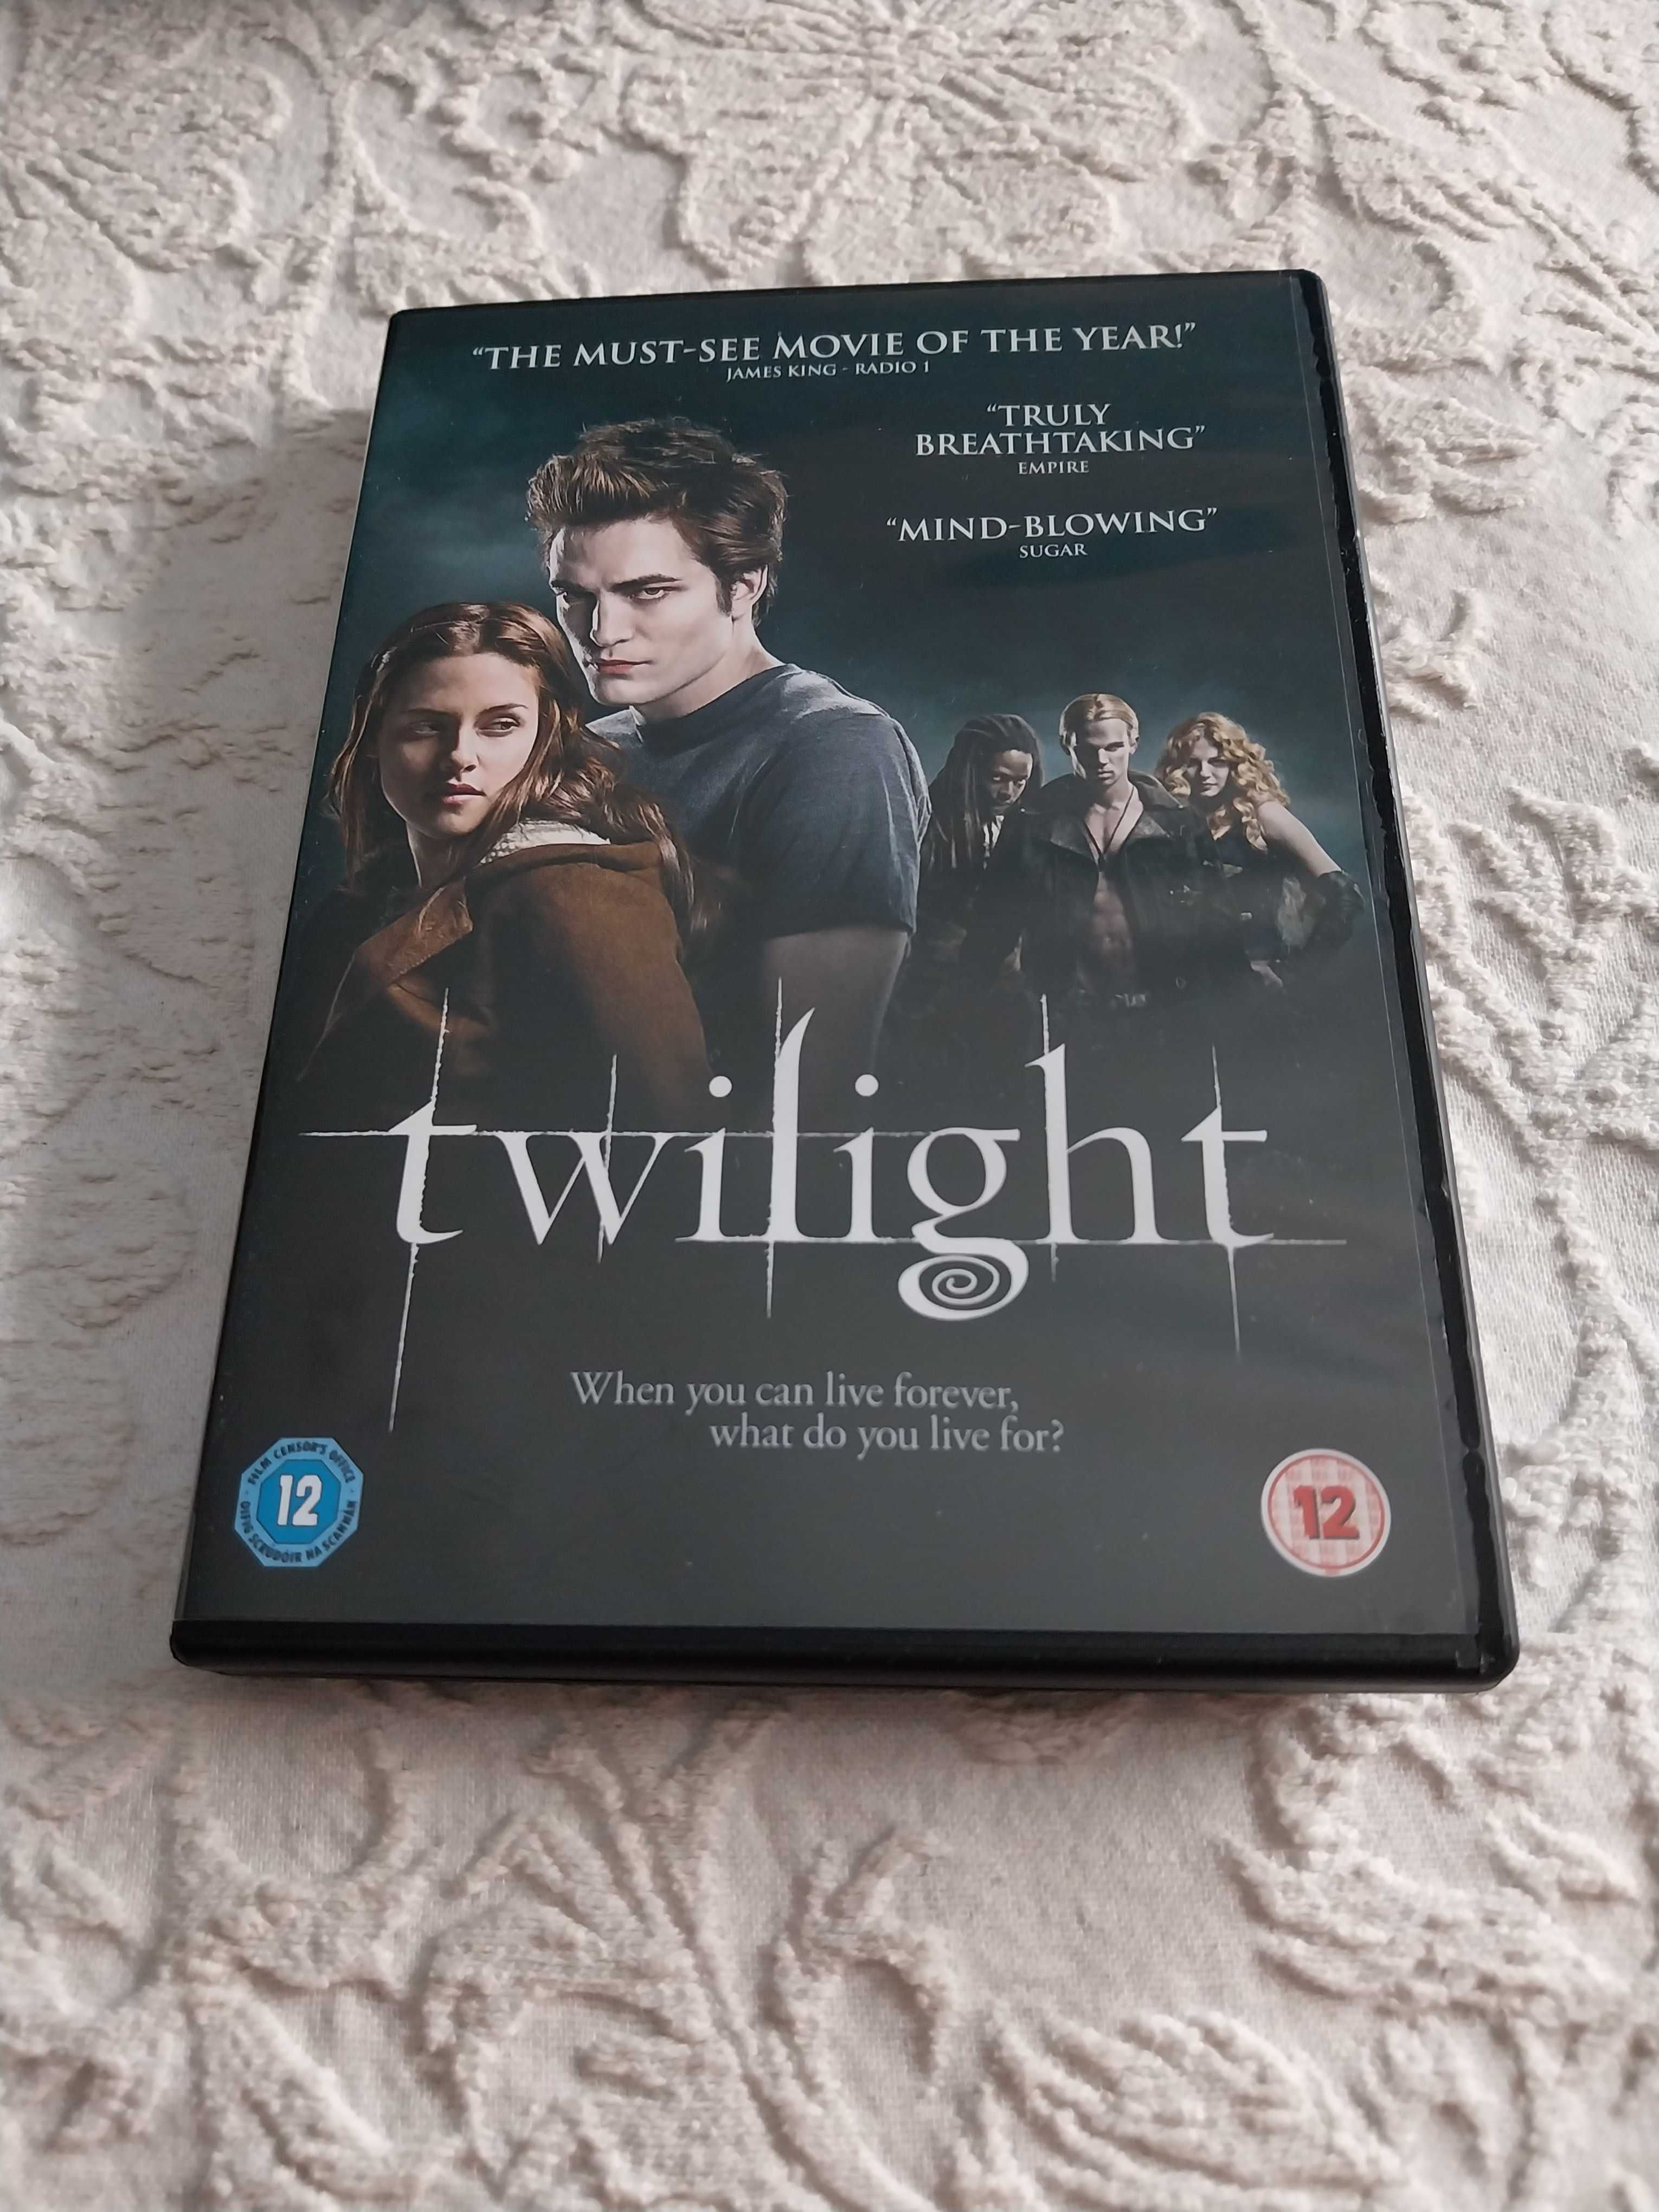 Trilogia Twilight / Saga Crepúsculo